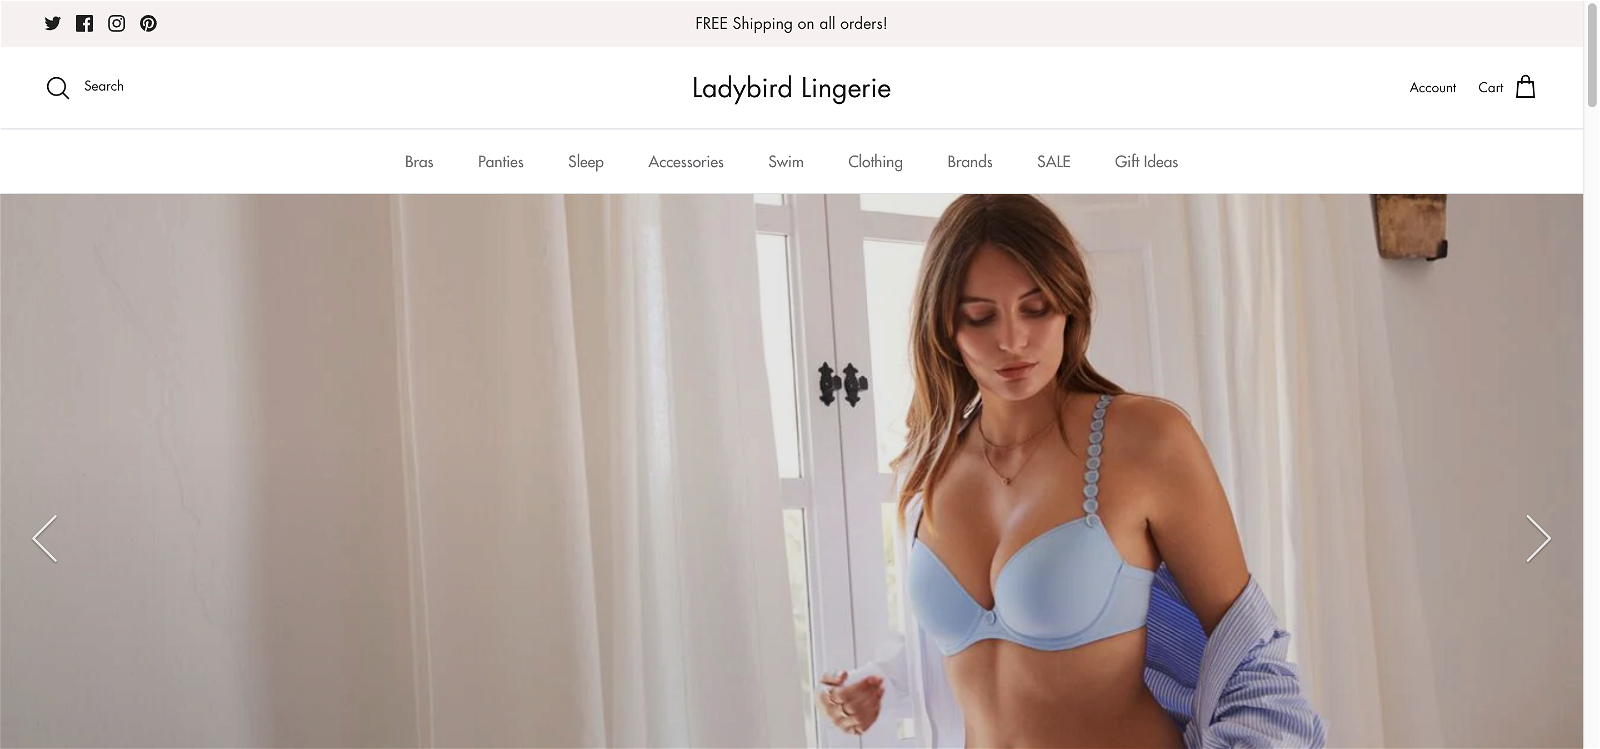 Lady bird lingerie.com